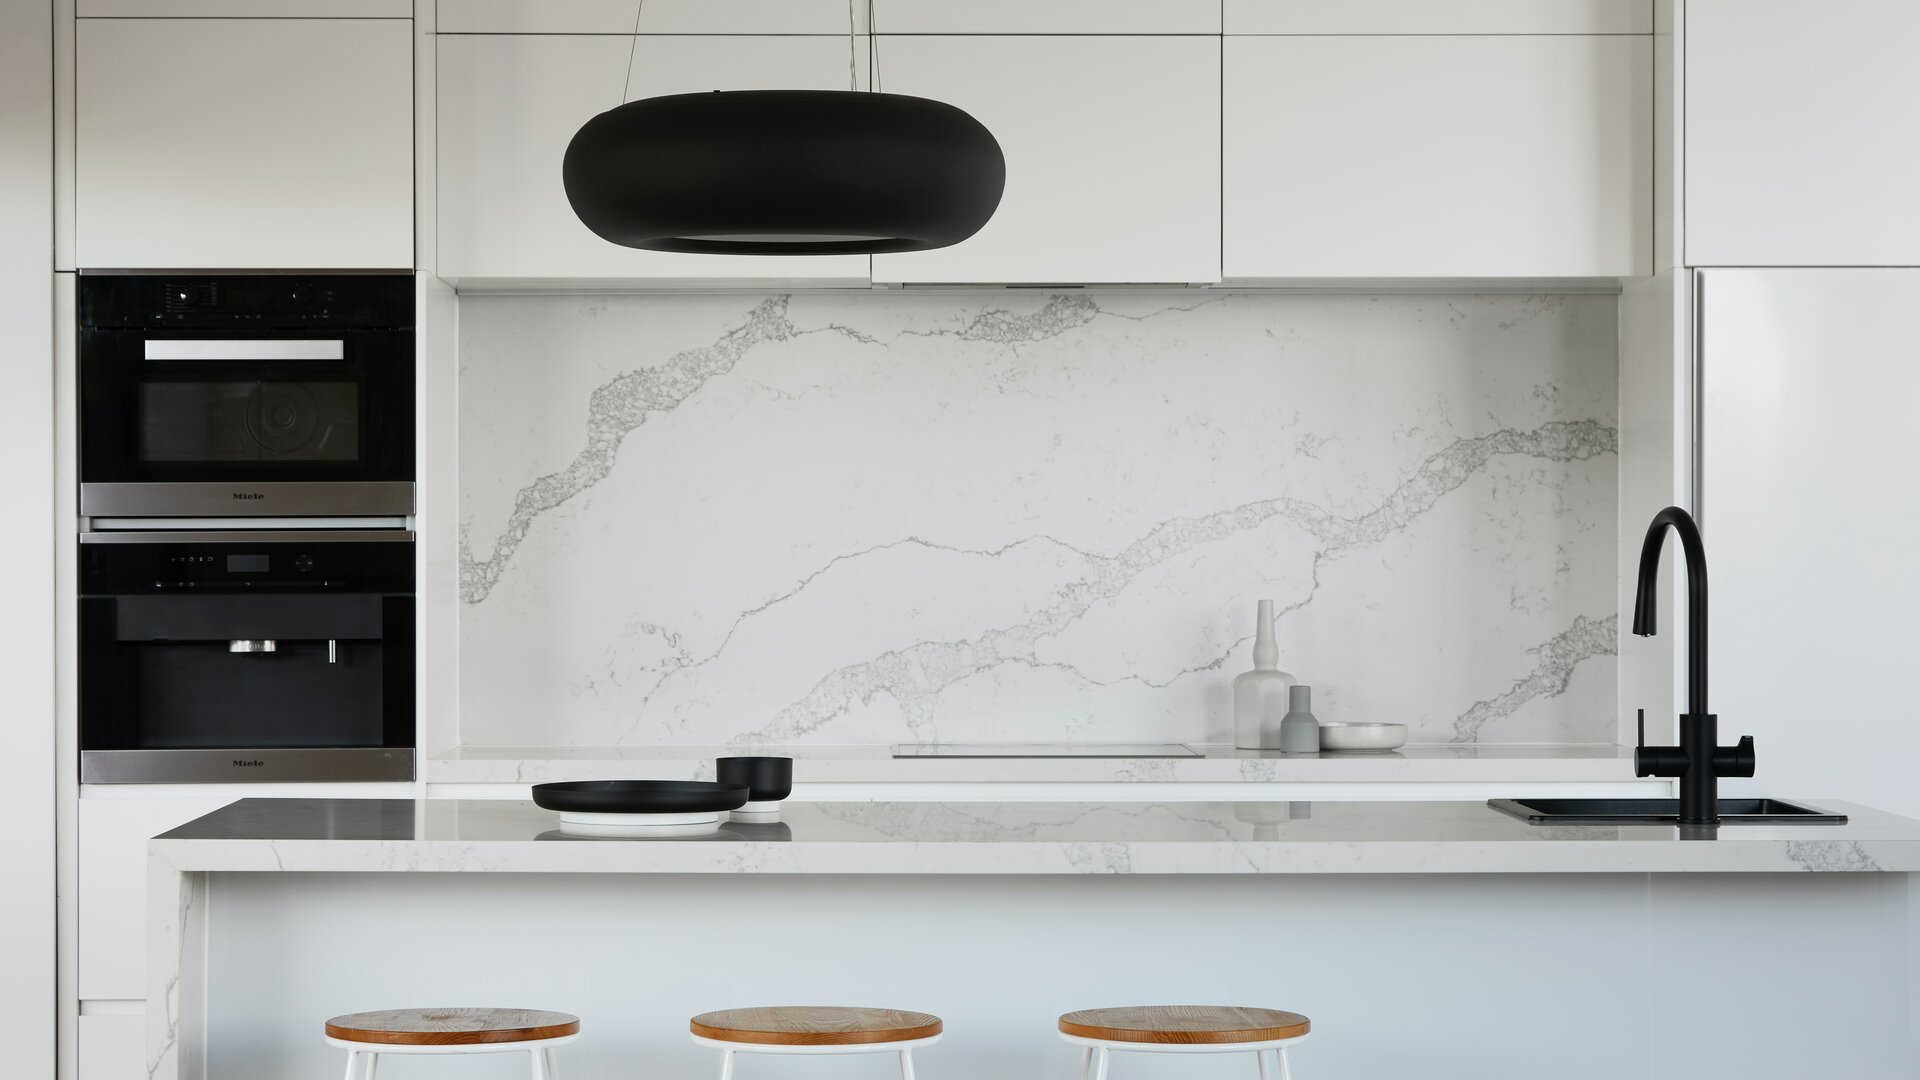 Moderne witte keuken met zwarte elementen en werkblad van natuursteen.